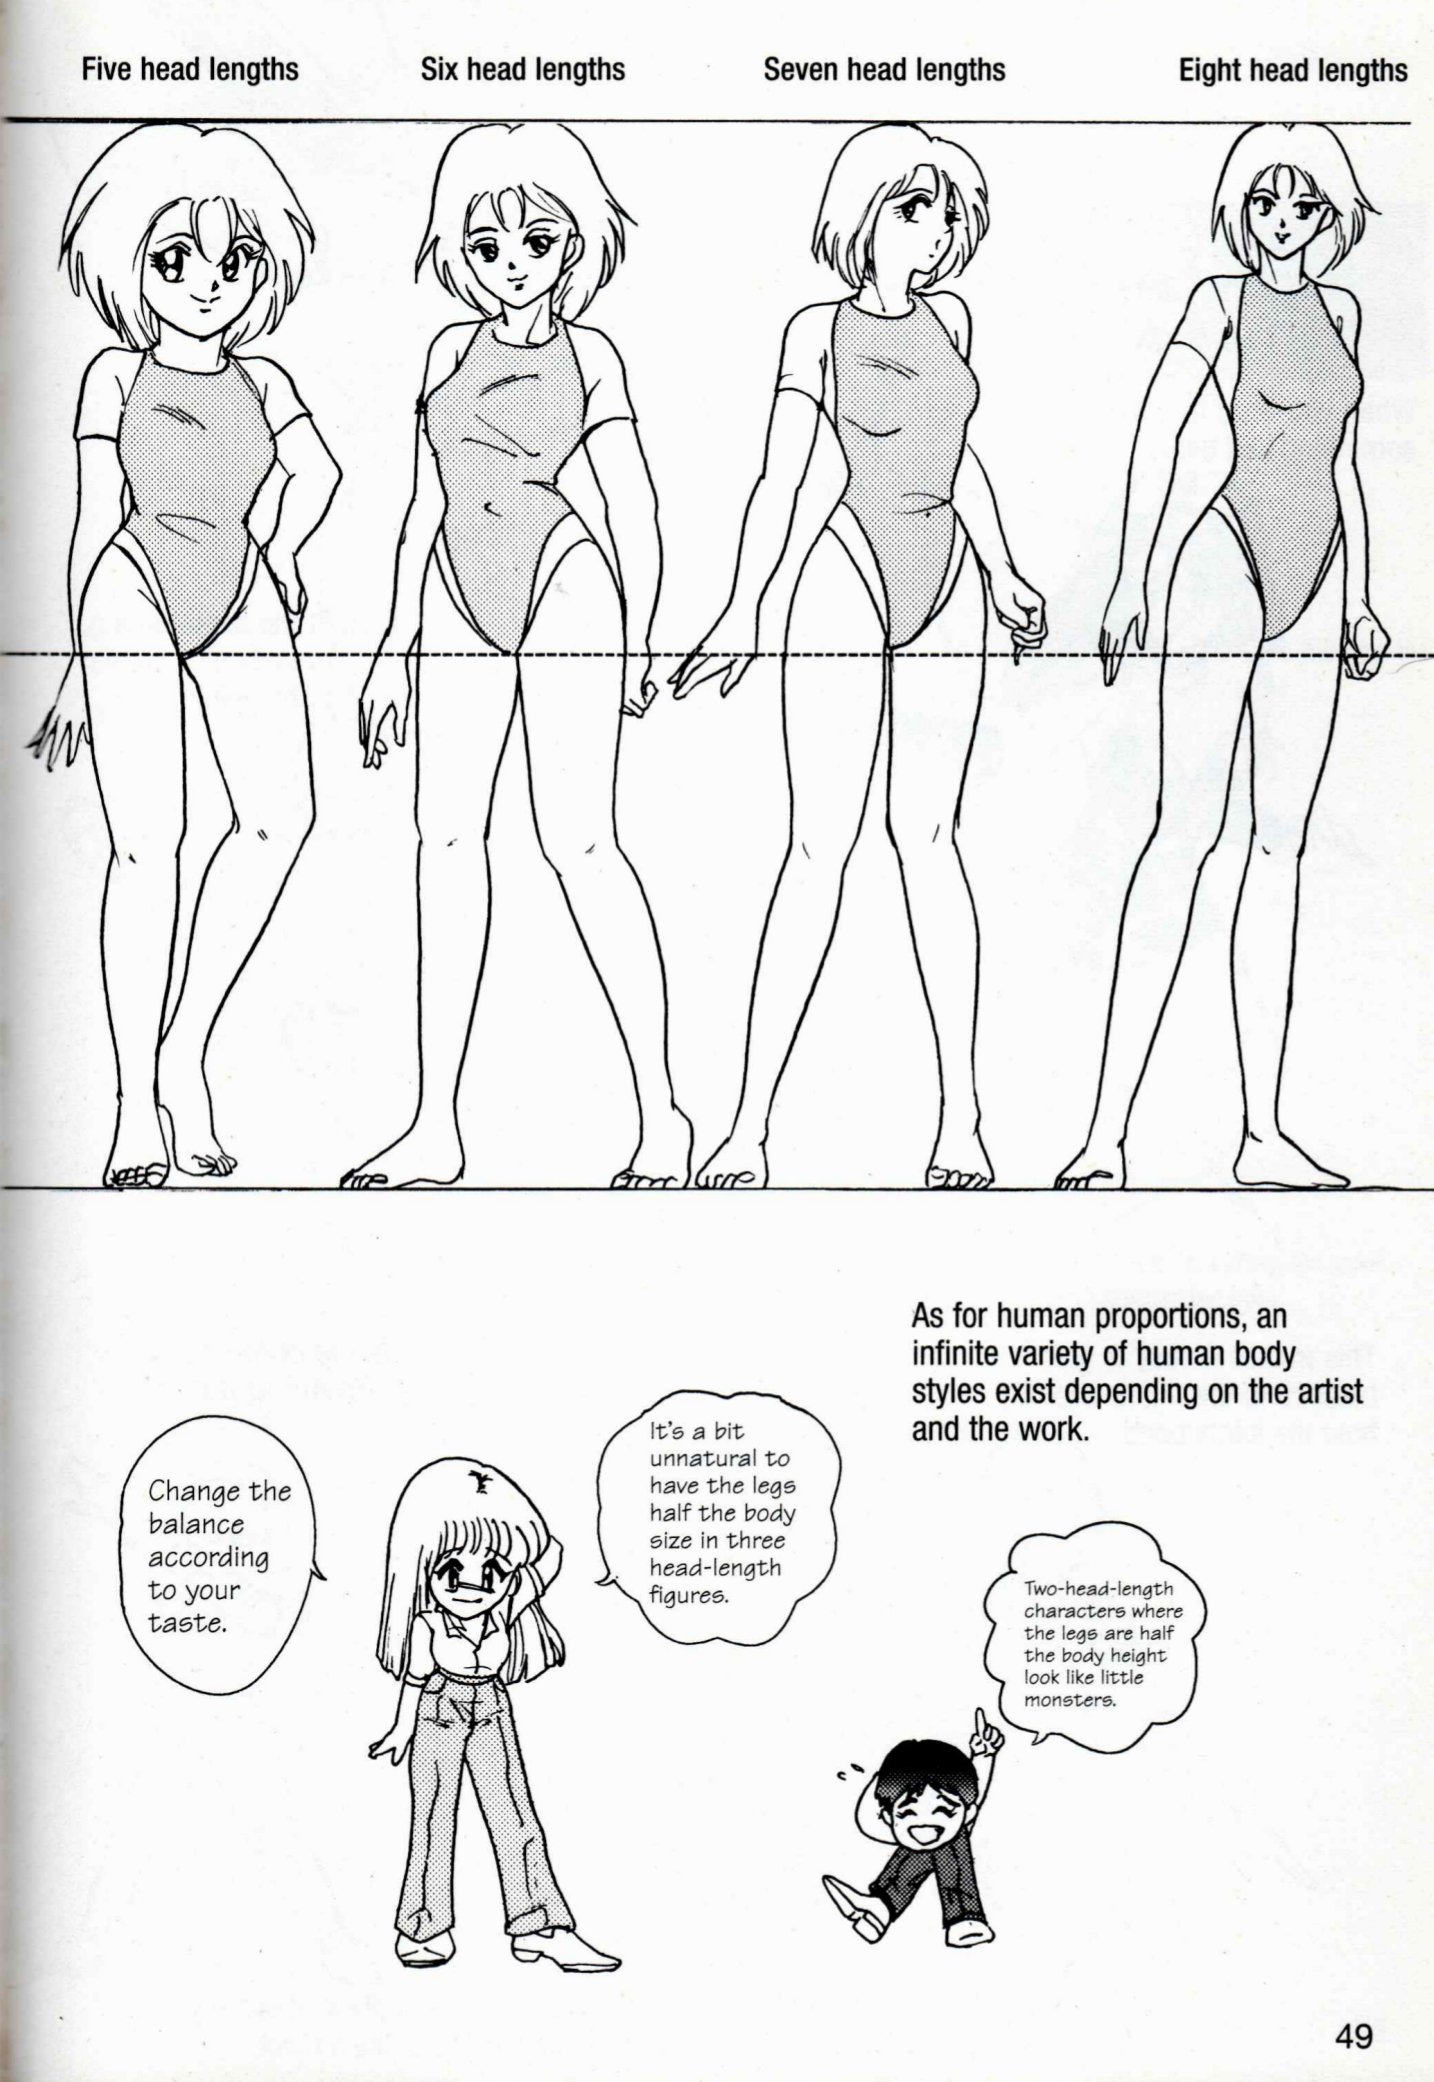 How to Draw Manga 